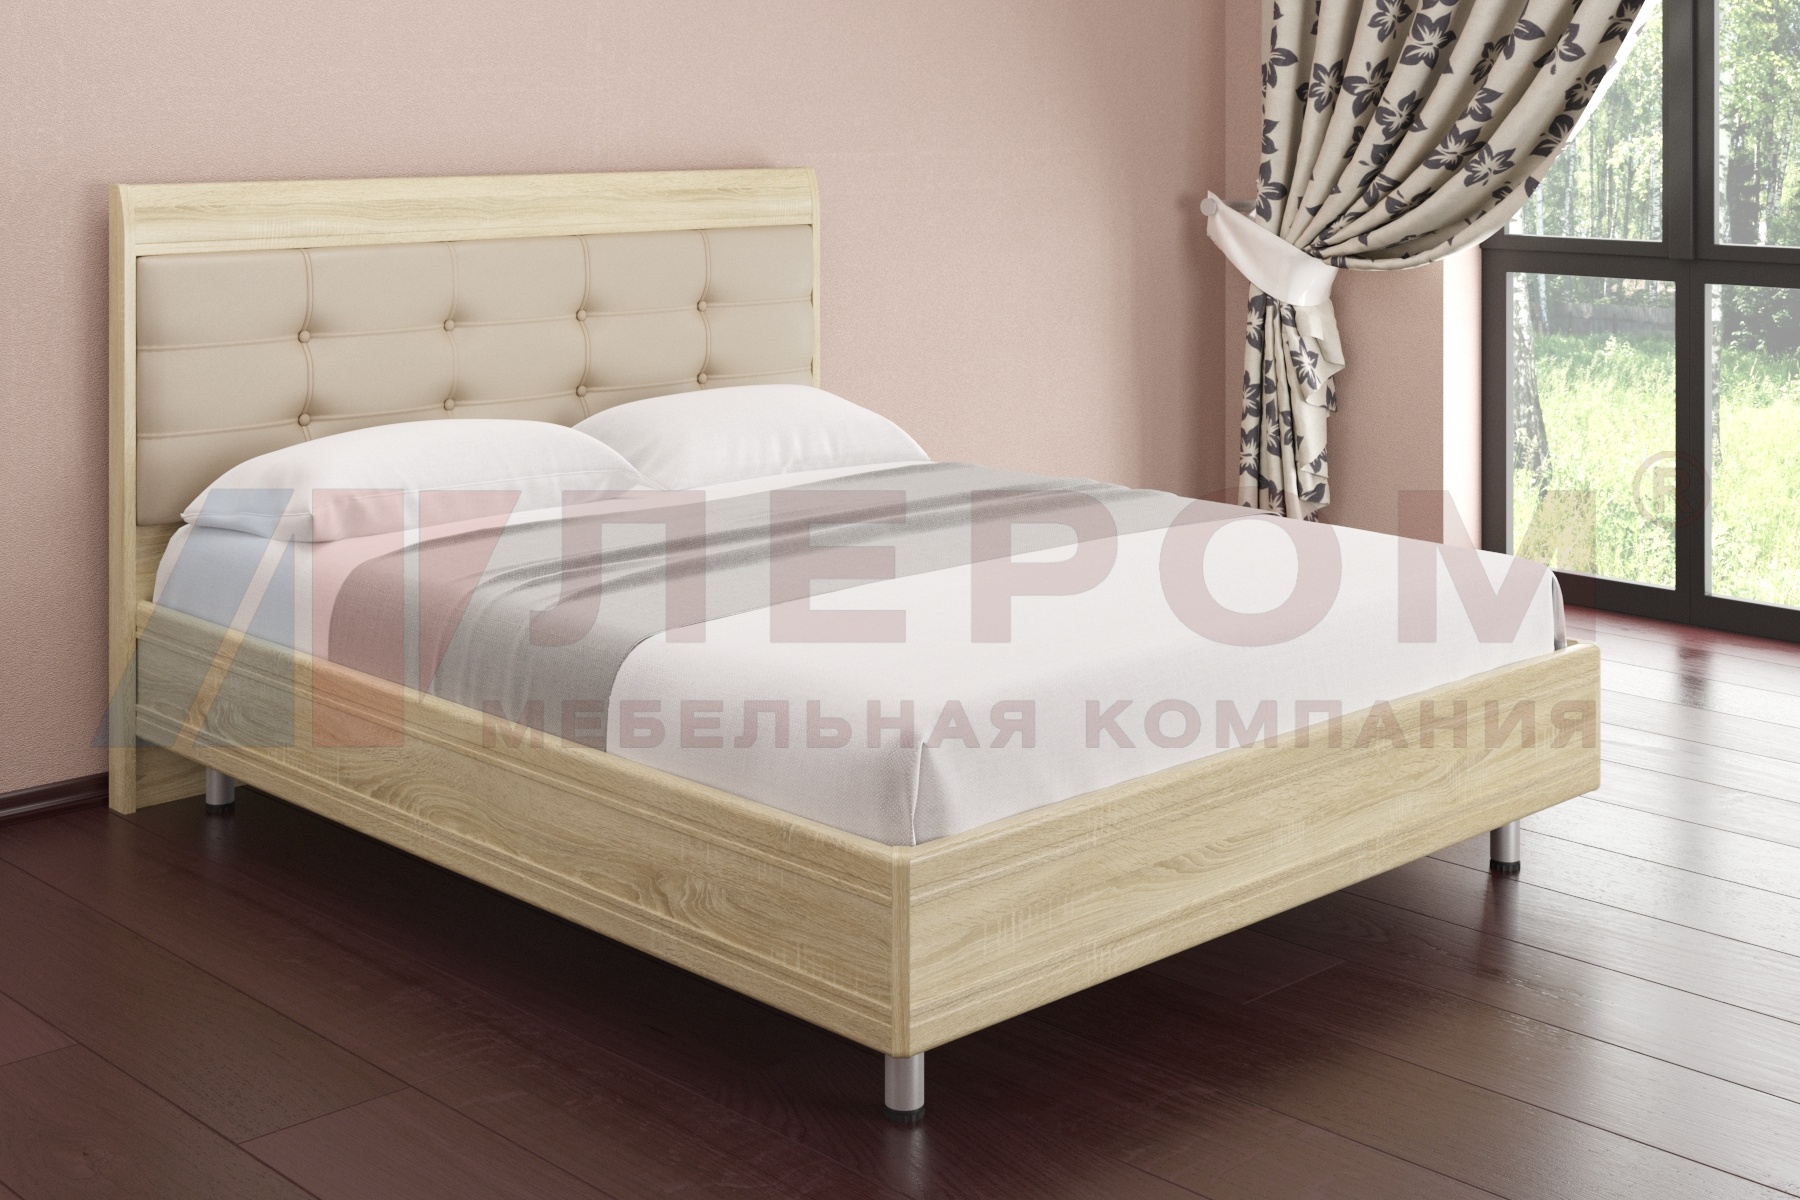 КР-2854 кровать (1.8*2,0)